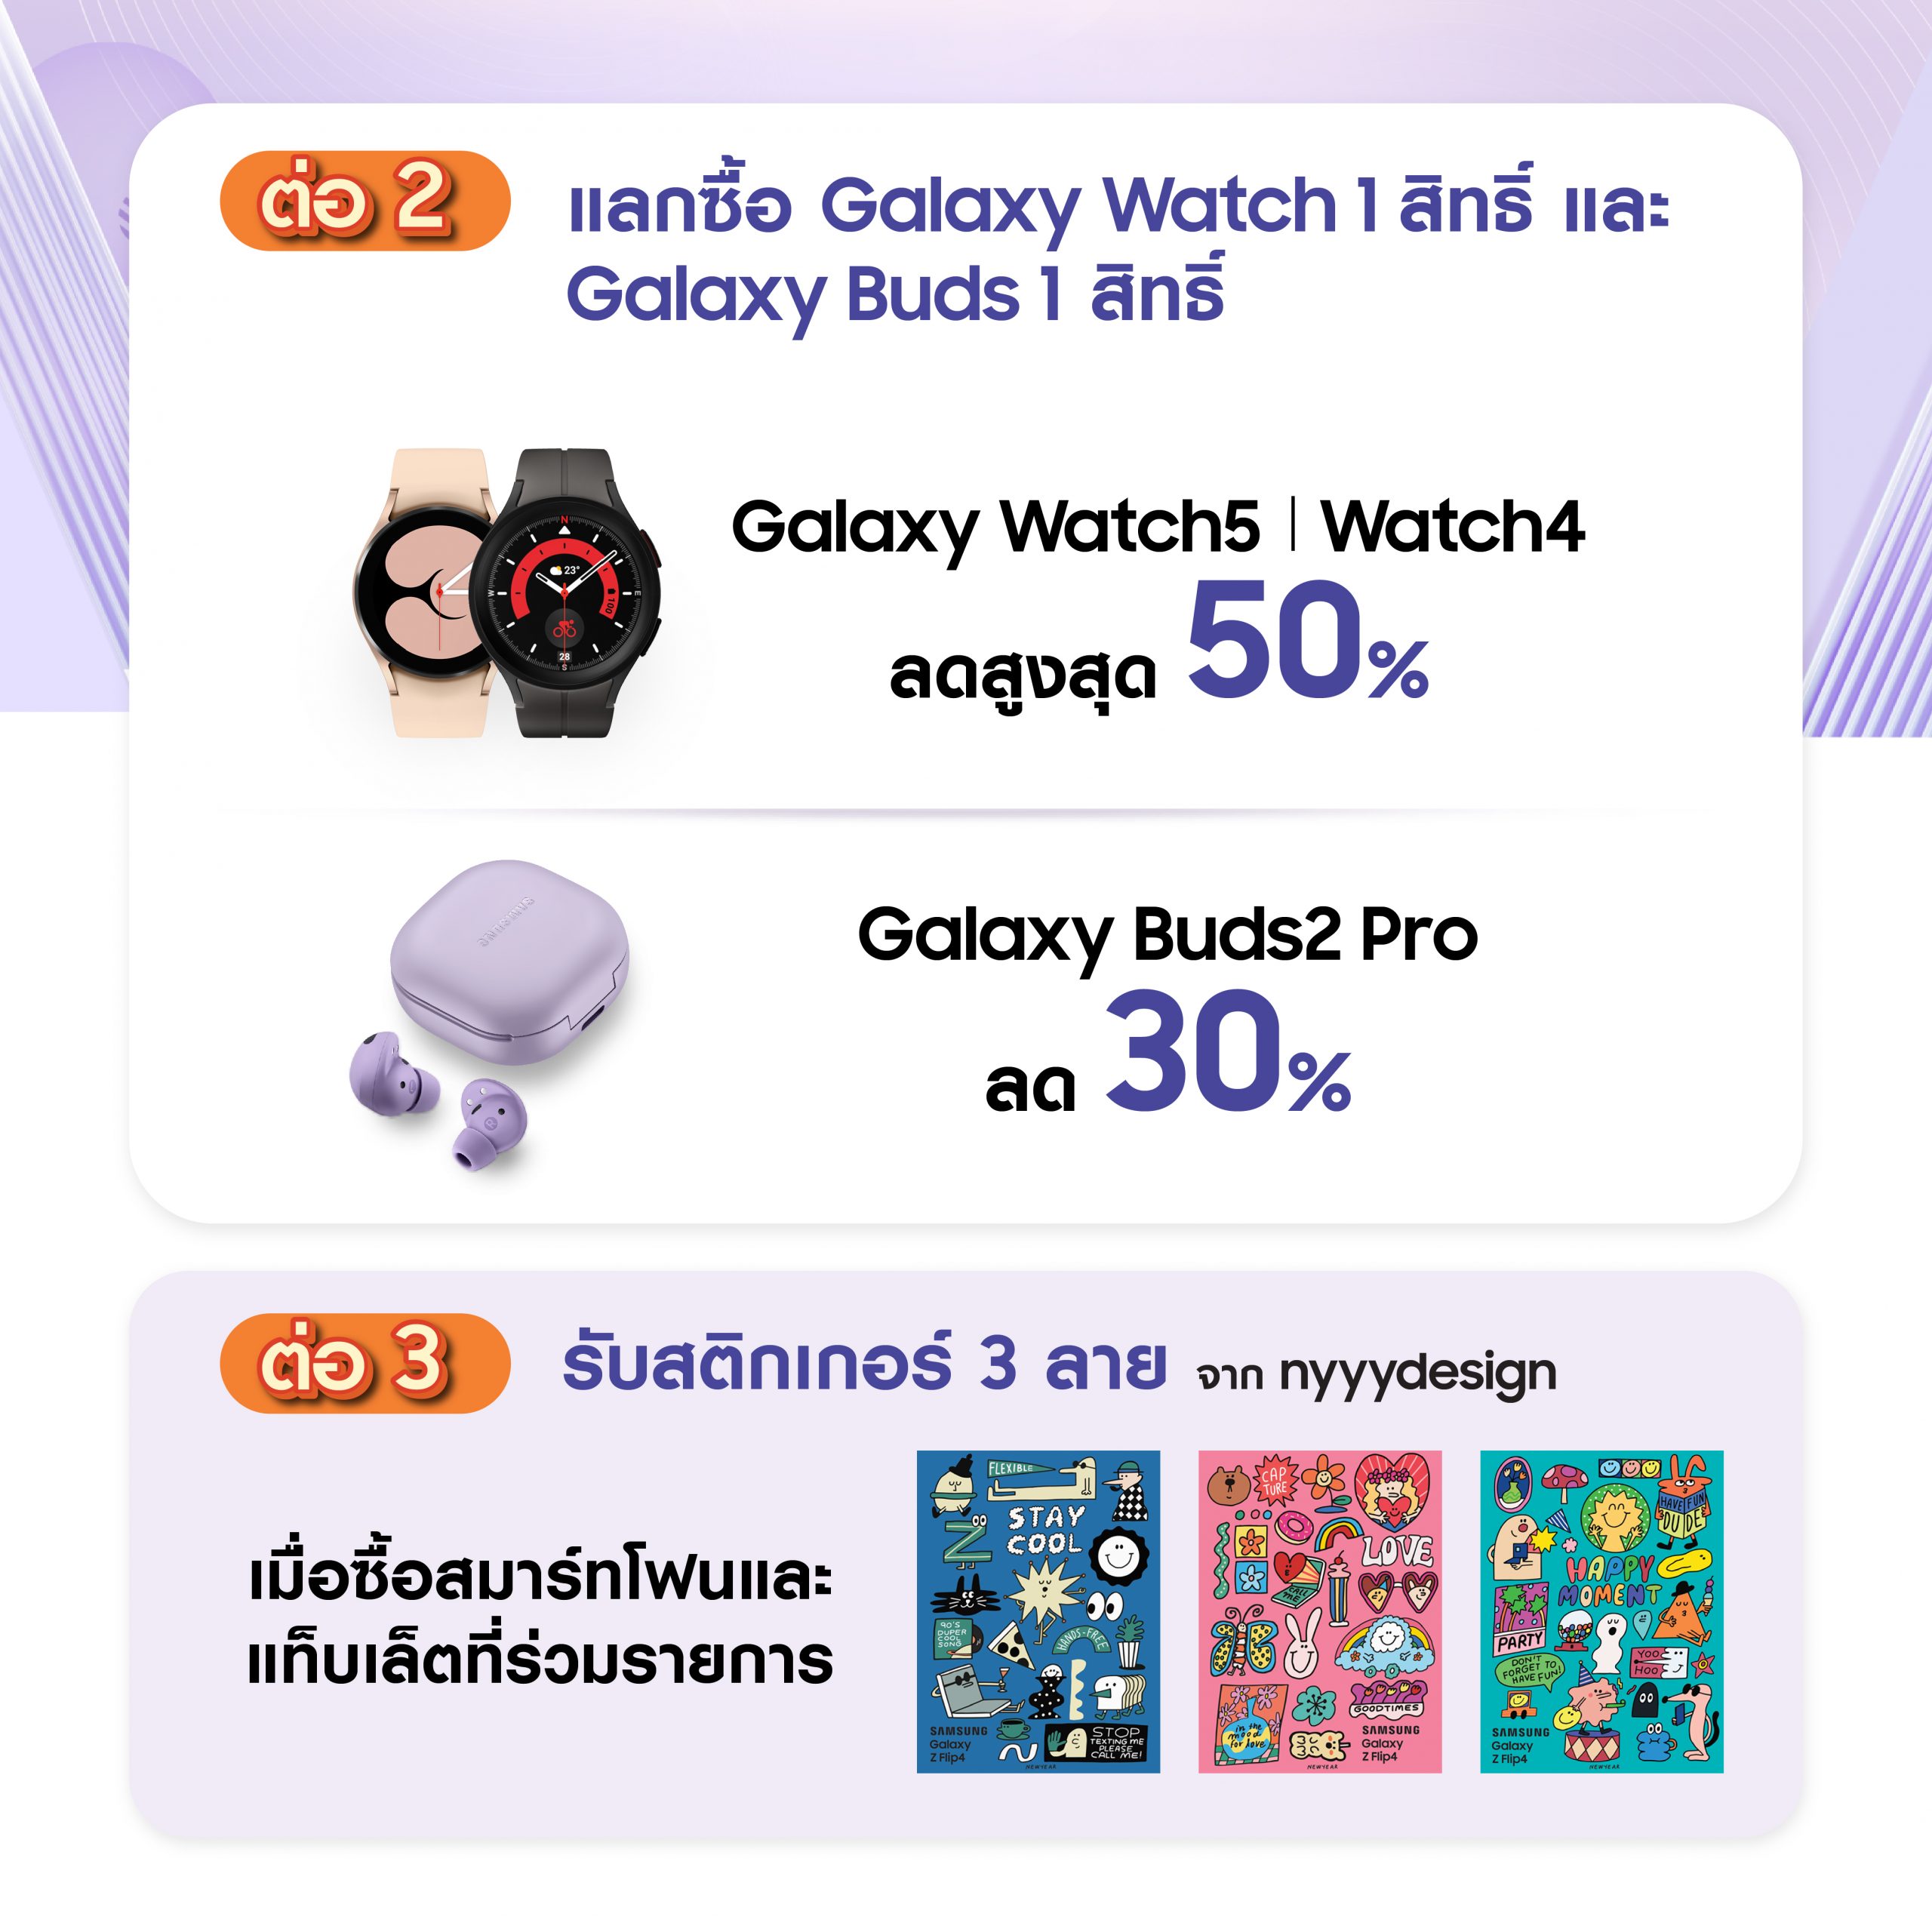 Samsung Thailand Mobile Expo